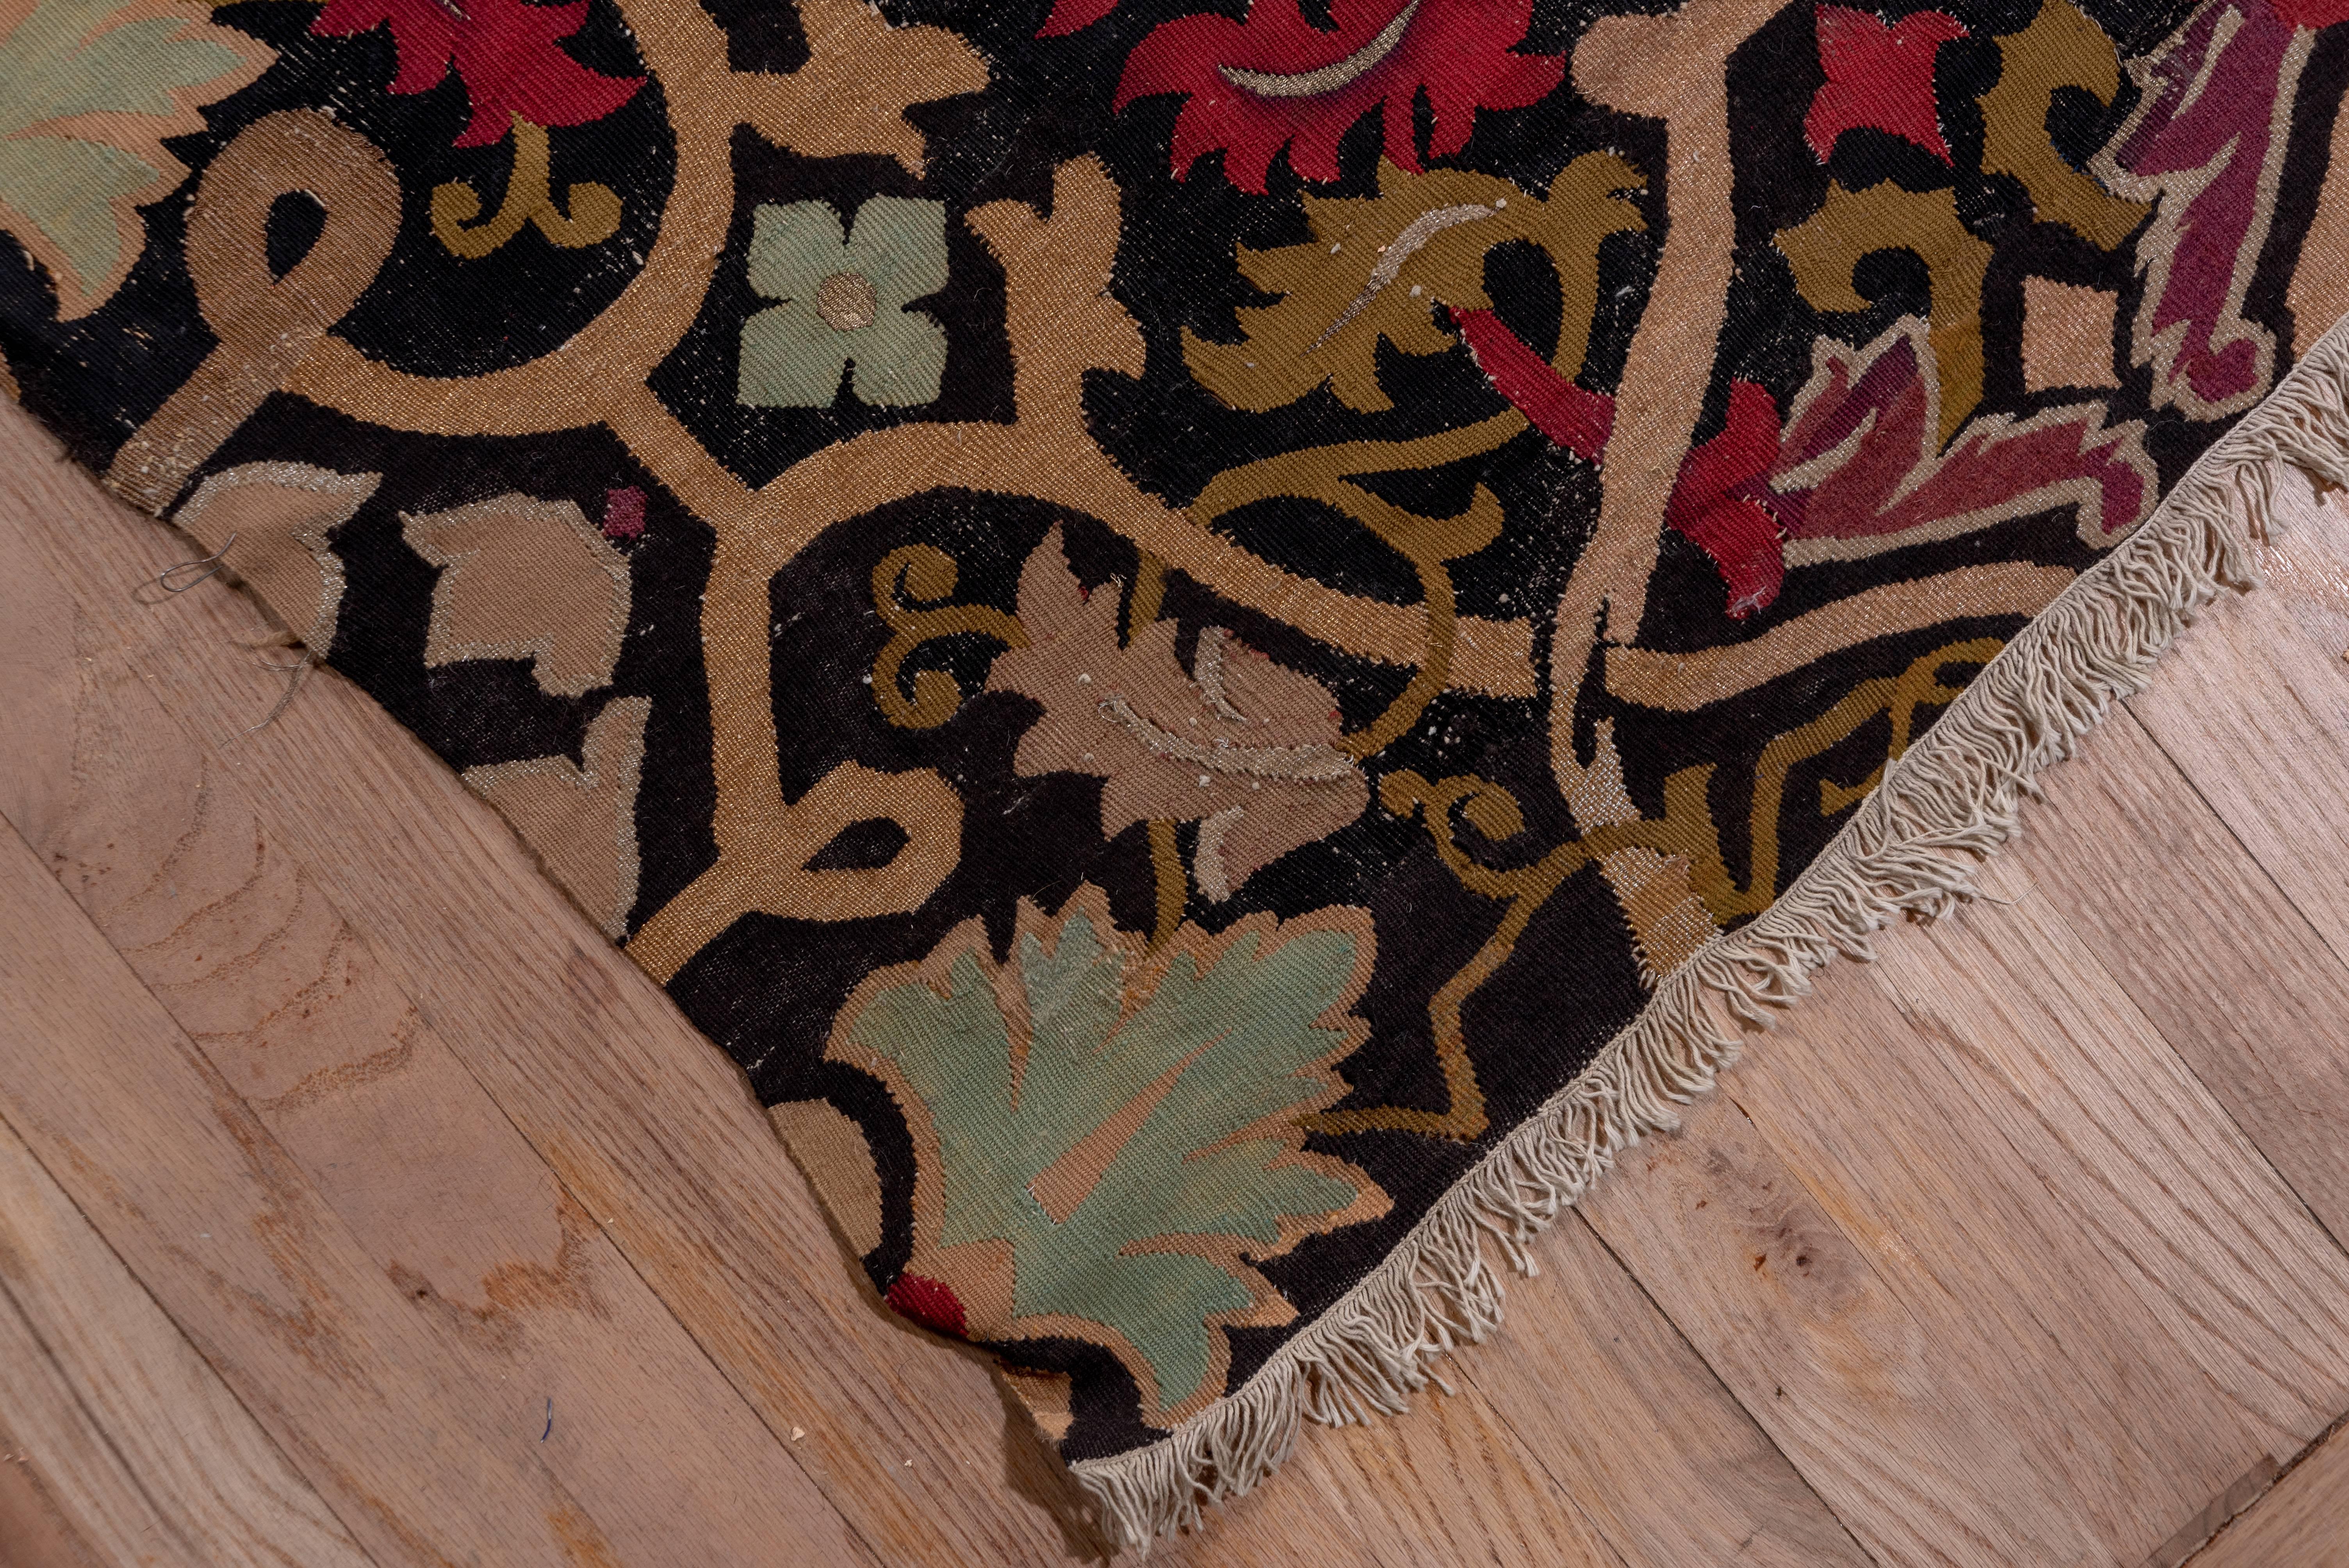 Ce tapis français sans bordure et sans velours, tissé en tapisserie sur un fond noir, présente un motif de rosettes cruciformes, de vigne à sangles pénétrantes et de diverses feuilles d'acanthe. Il y a des accents en fil métallique de couleur or et